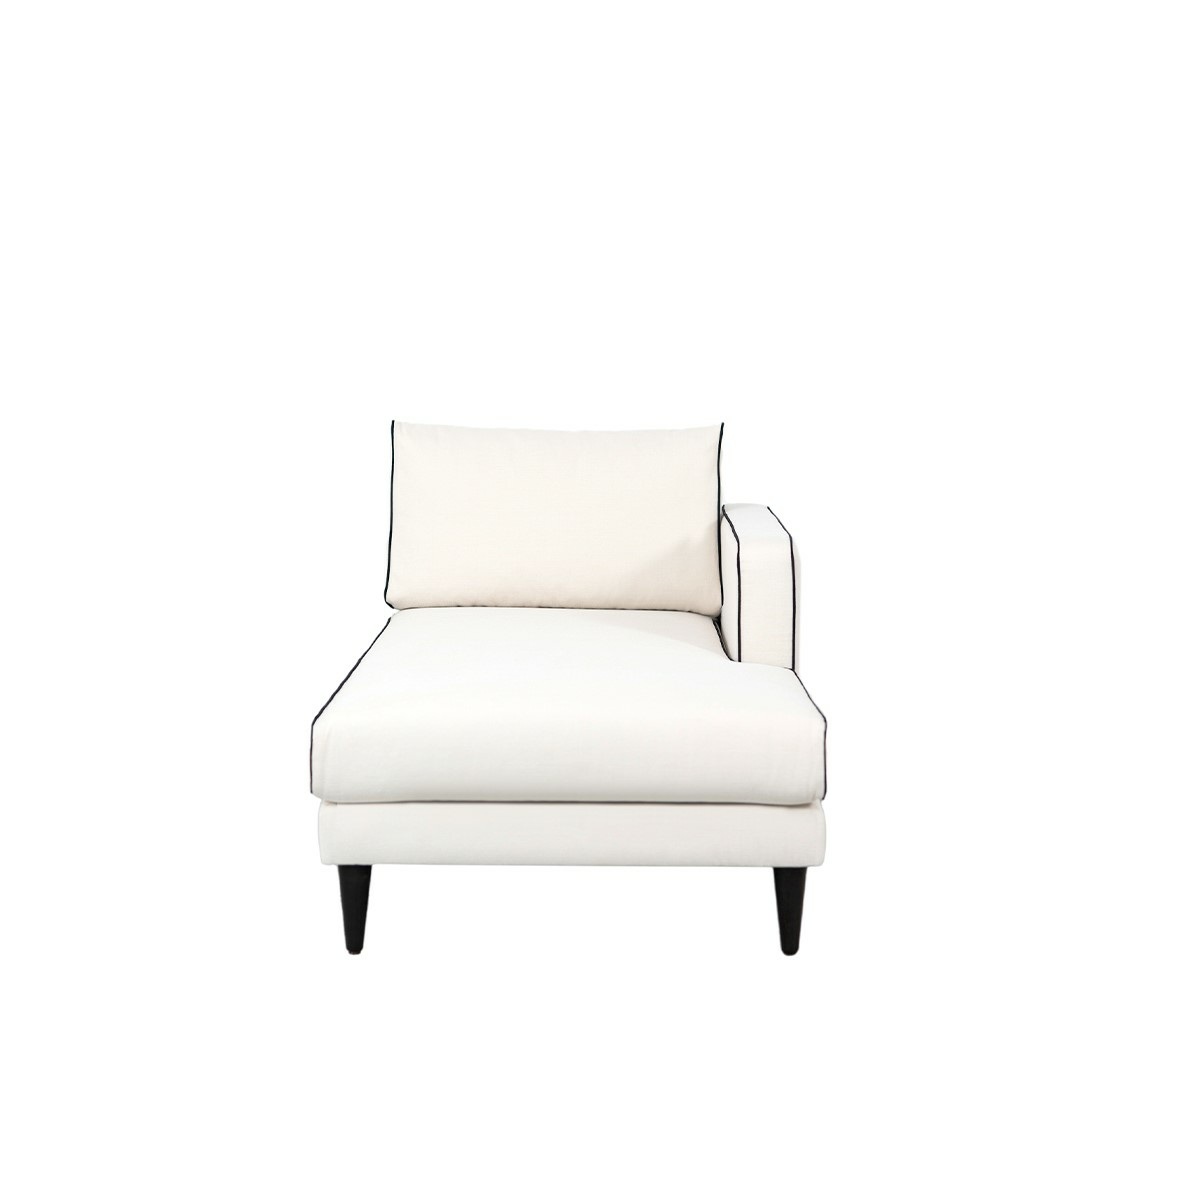 Noa sofa - Right armrest, L180 x P90 x H80 cm - Cotton - image 2